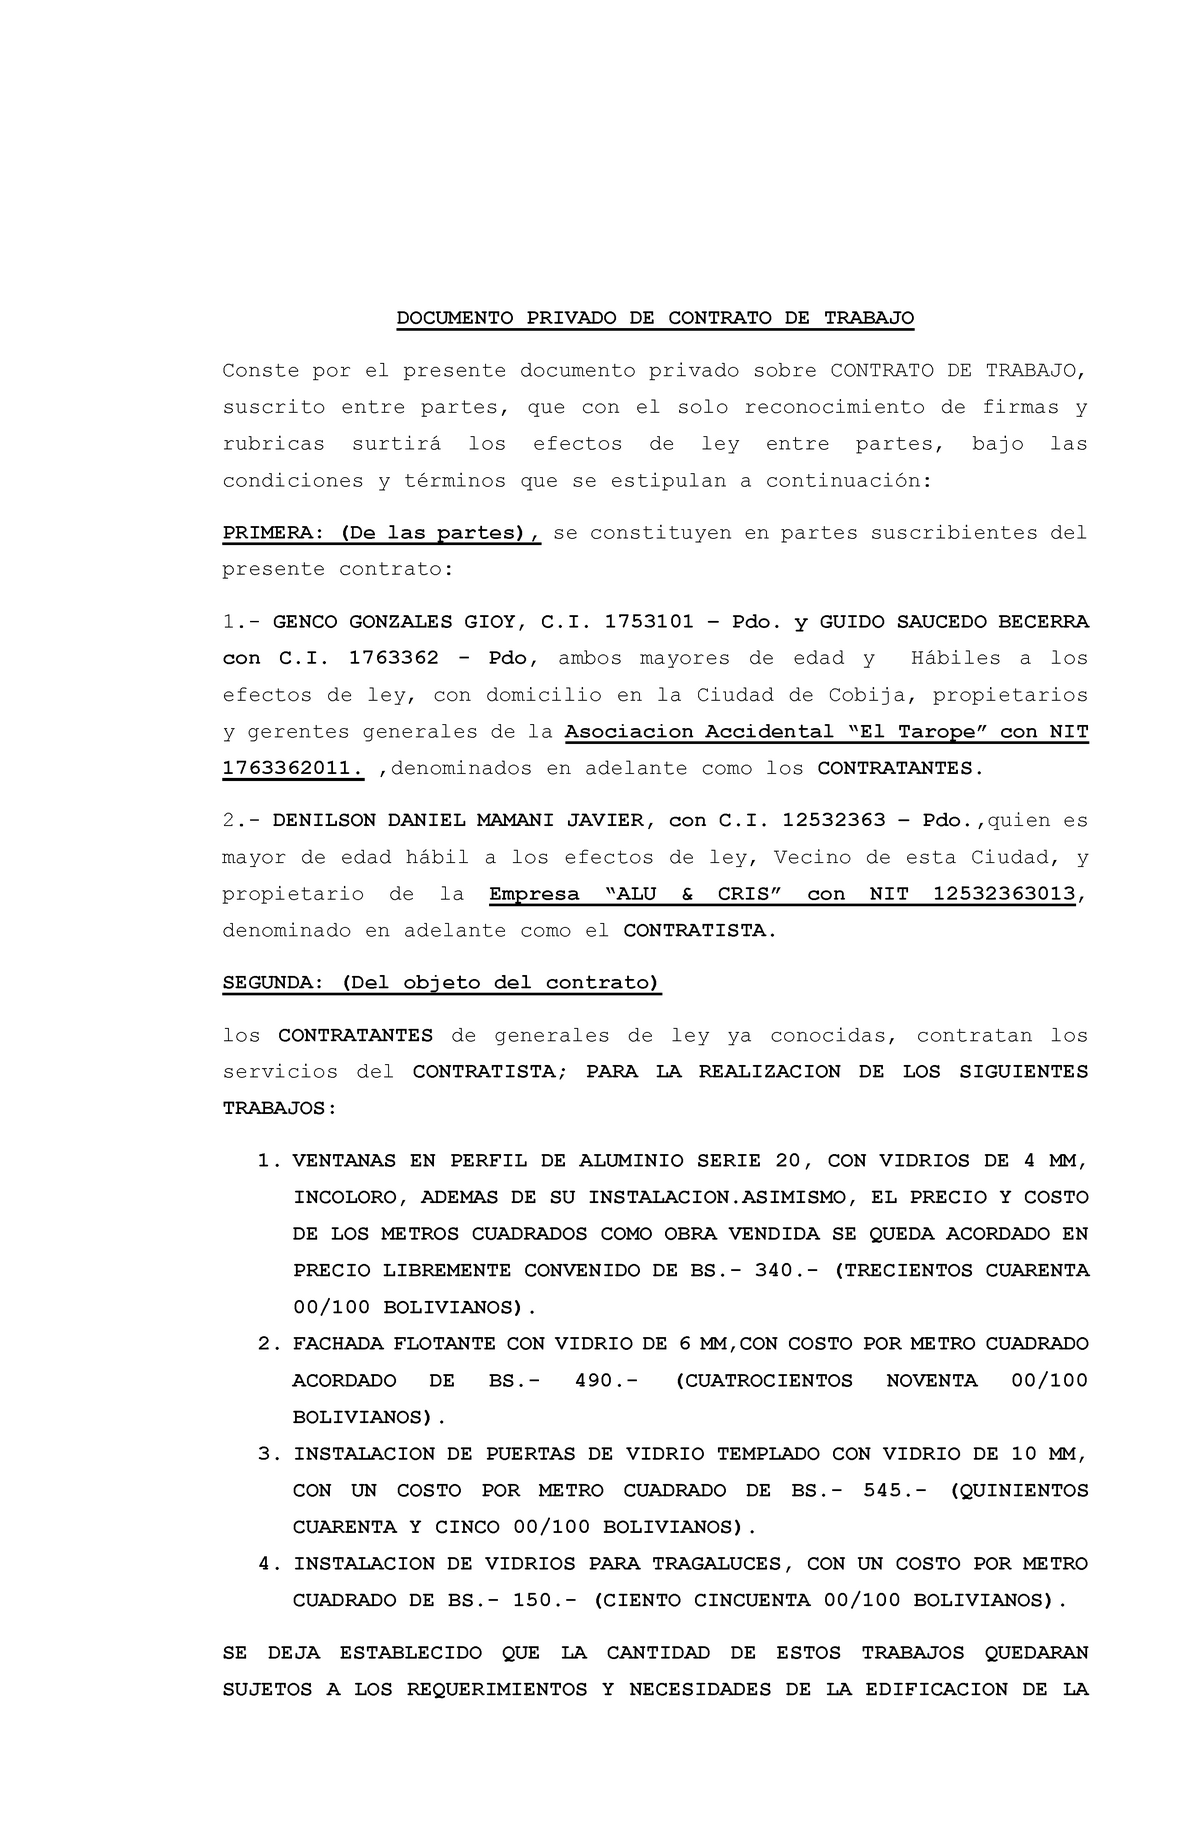 Documento Privado DE Contrato DE Trabajo 123 - DOCUMENTO PRIVADO DE CONTRATO  DE TRABAJO Conste por - Studocu